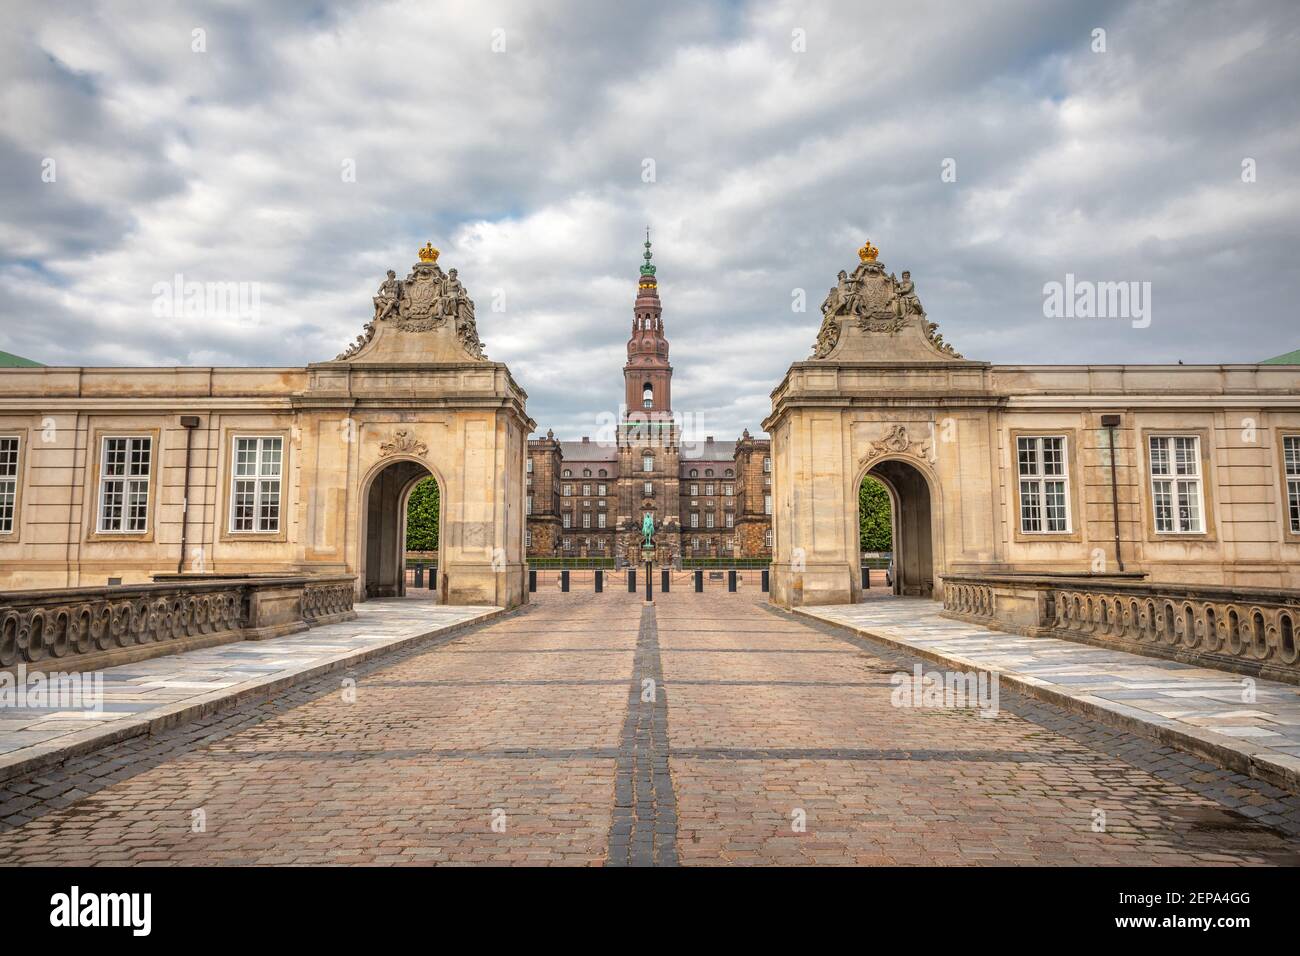 Le Palais Christiansborg est un palais et un bâtiment gouvernemental sur l'îlot de Slotsholmen dans le centre de Copenhague, au Danemark Banque D'Images